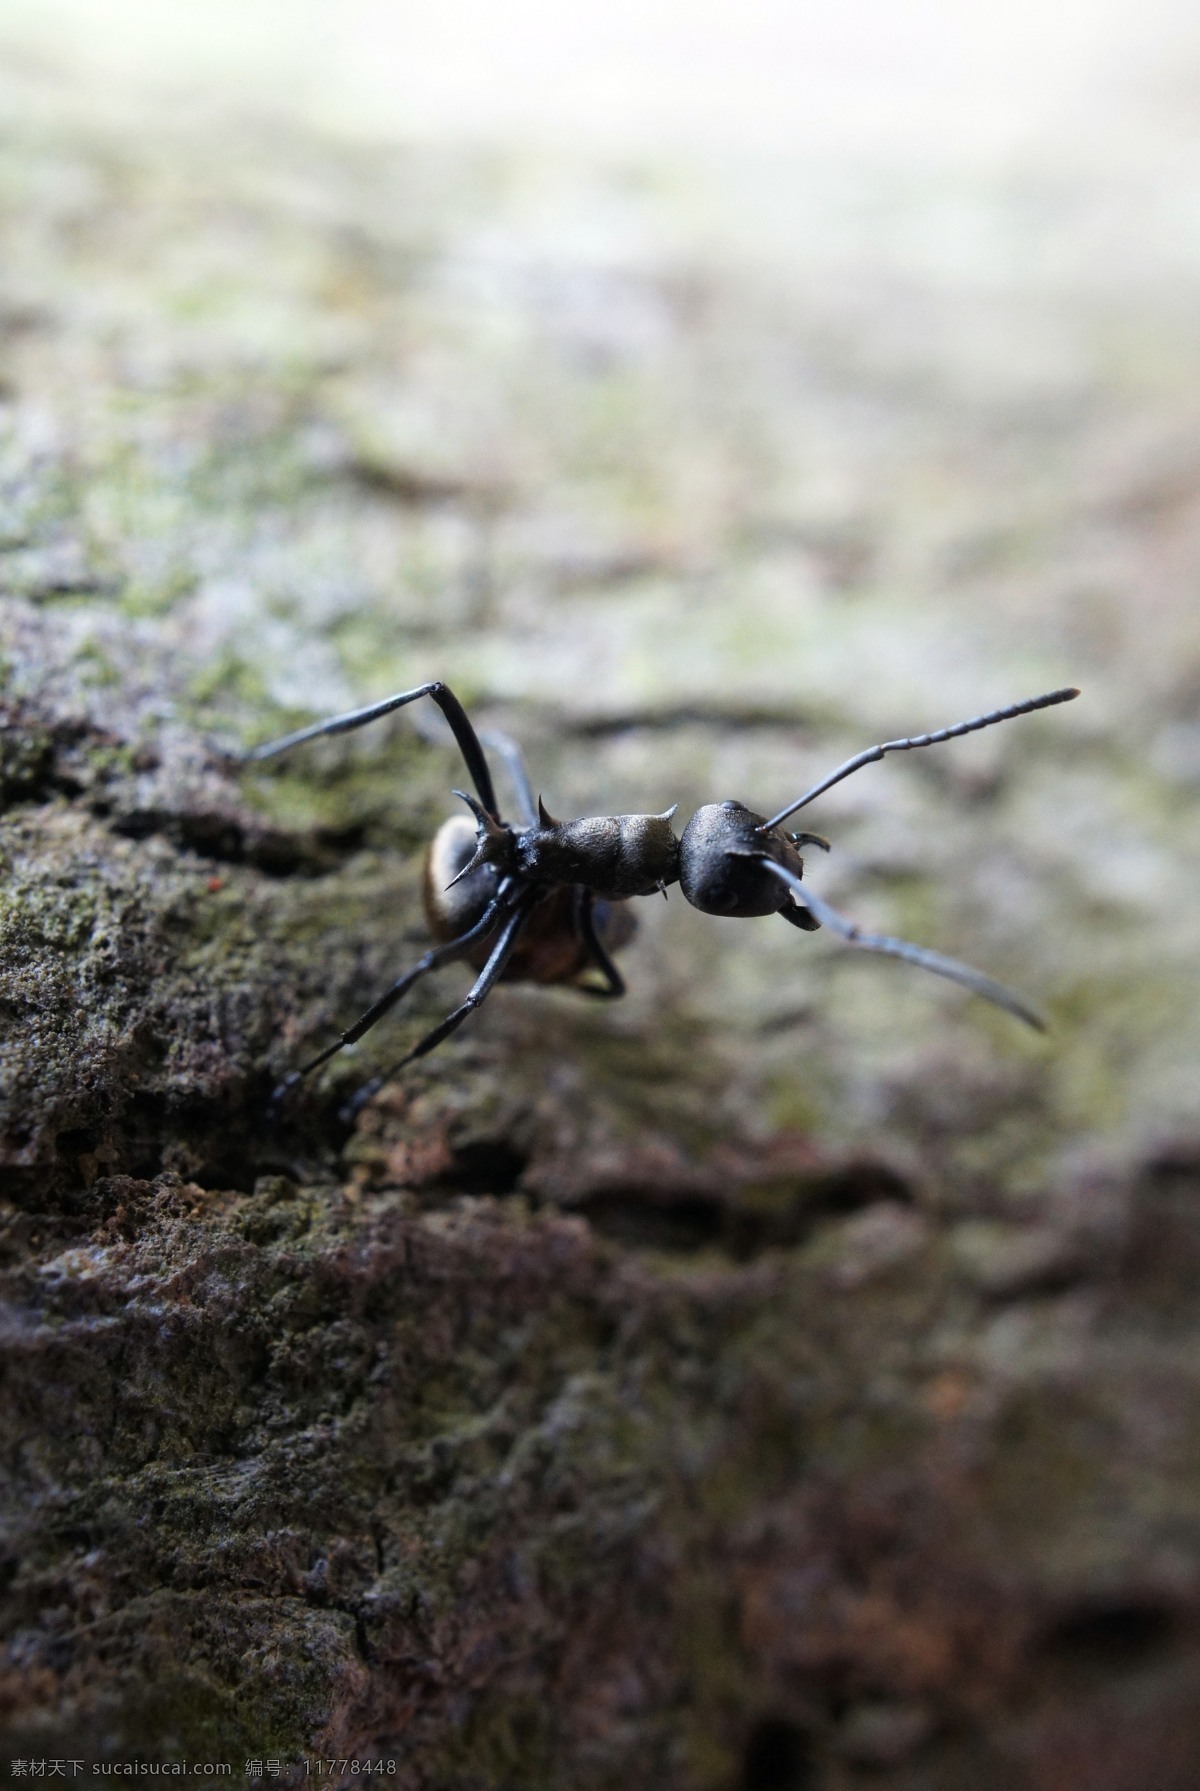 蚂蚁 昆虫 生物 生物世界 微观 微距 自然 工蚁 大蚂蚁 风湿 触角 害虫